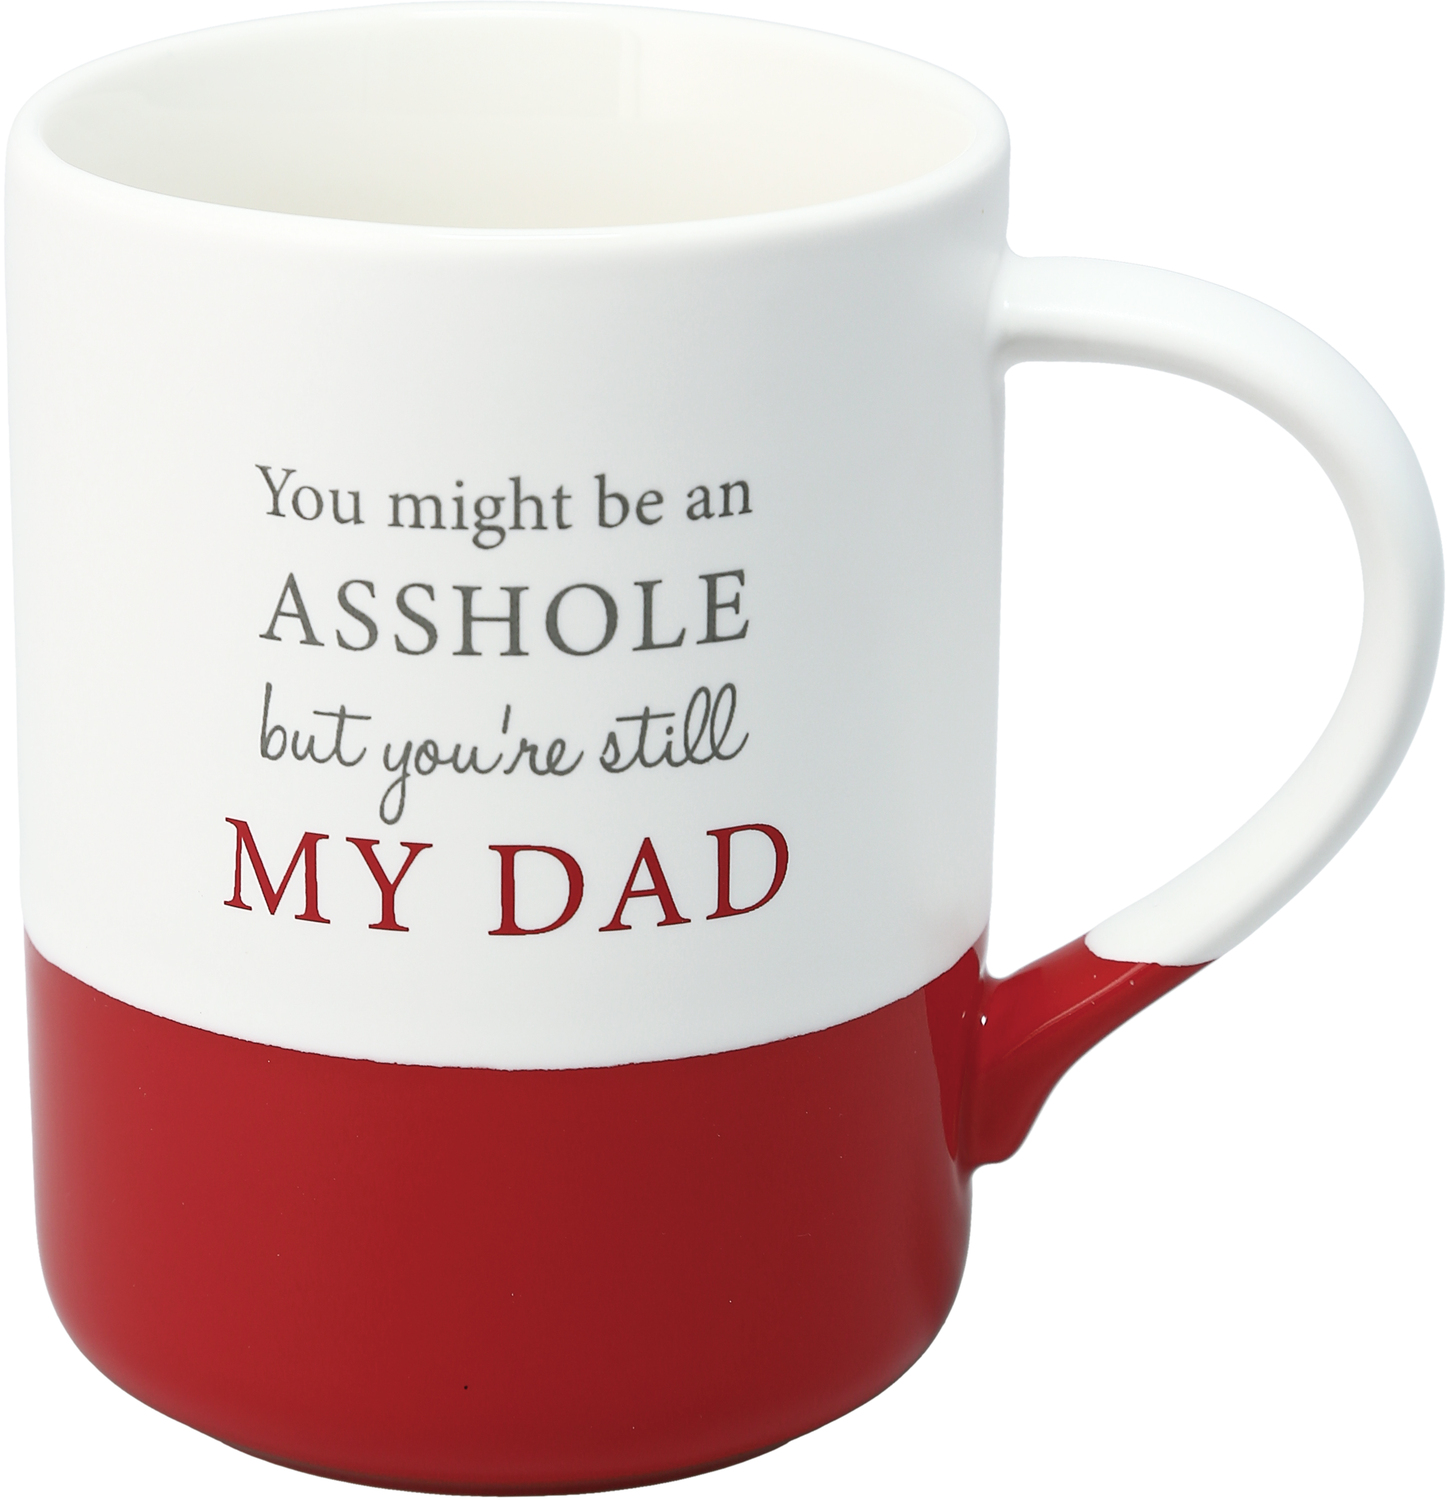 My Dad by A-Parent-ly - My Dad - 18 oz Mug